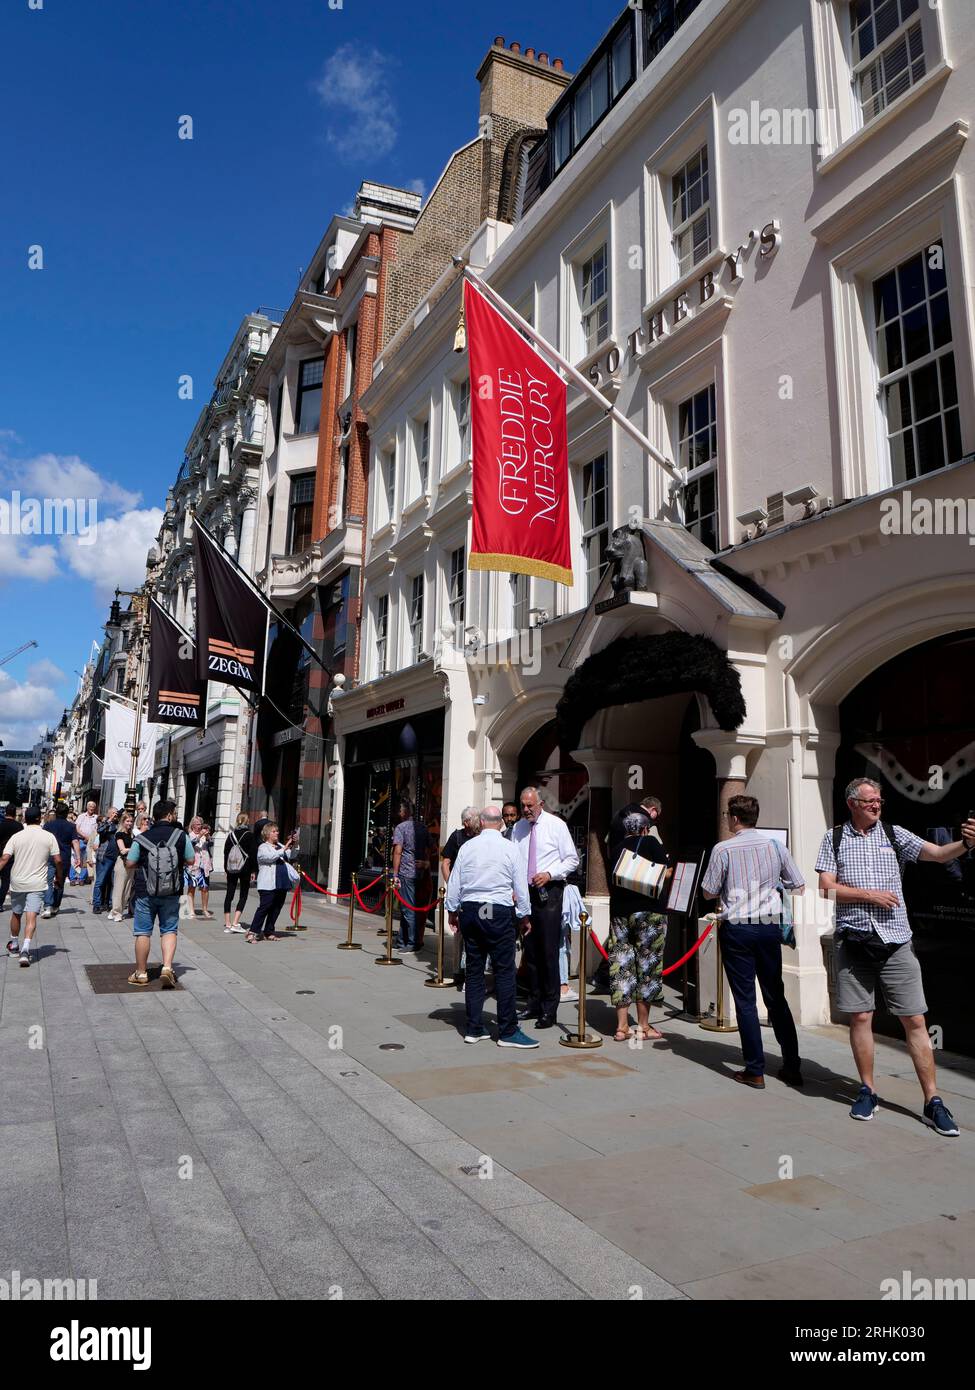 Sotherbys Freddie Mercury Eine Welt seiner eigenen Ausstellung New Bond Street Scene with Shoppers Passing, London, England, Vereinigtes Königreich Stockfoto